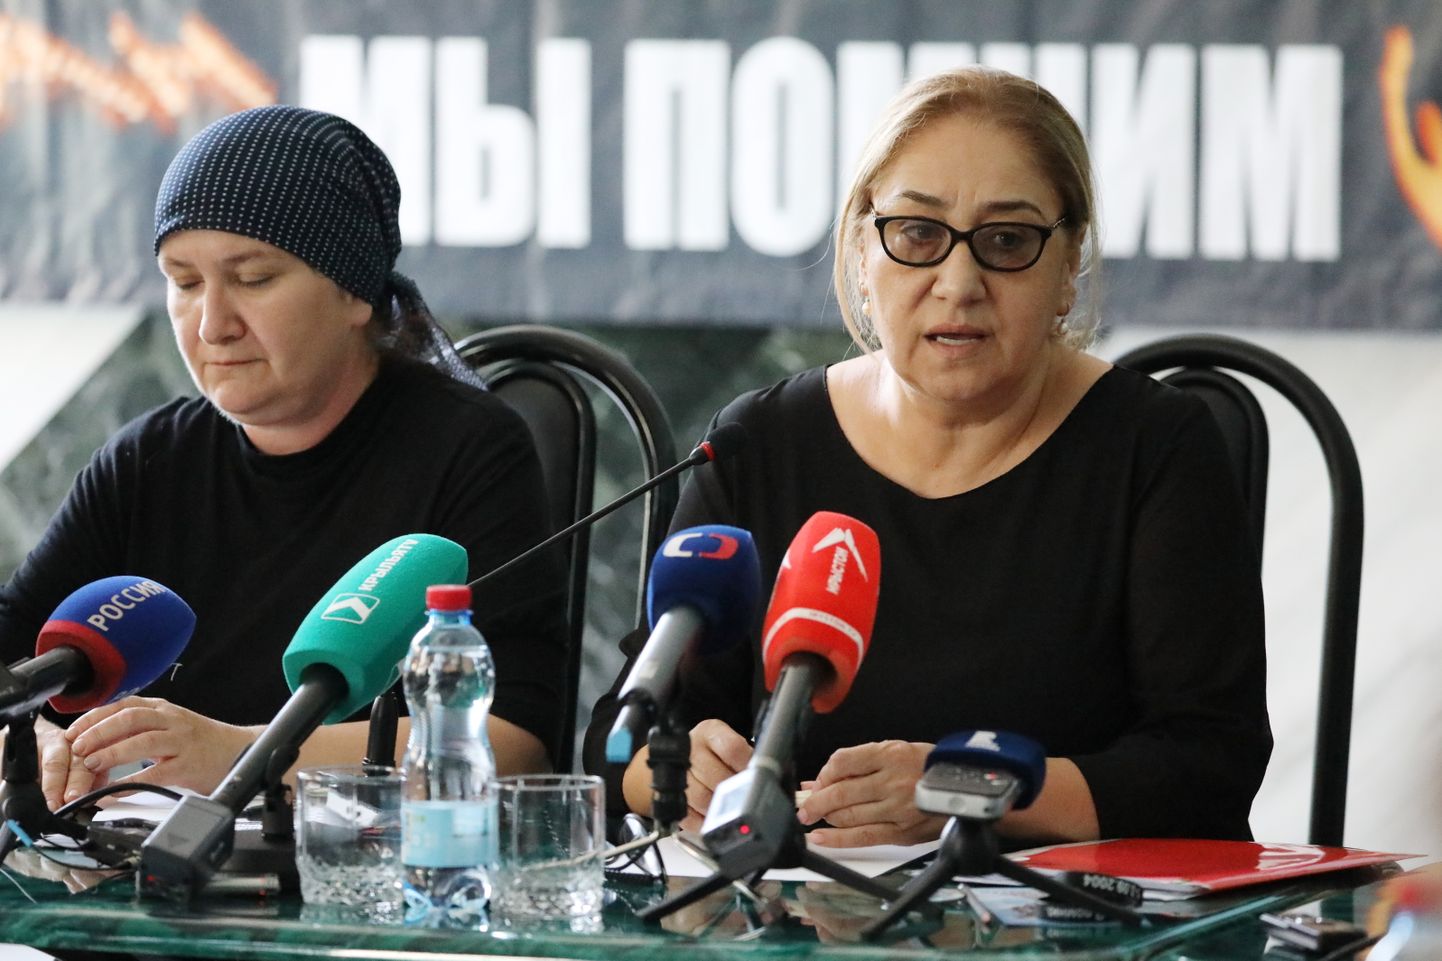 Ühenduse Beslani emade komitee liikmed pühapäeval 15 aastat tagasi alanud ja kaks päeva hiljem 334 inimese surmaga lõppenud pantvangikriisi teemal pressikonverentsi andmas.